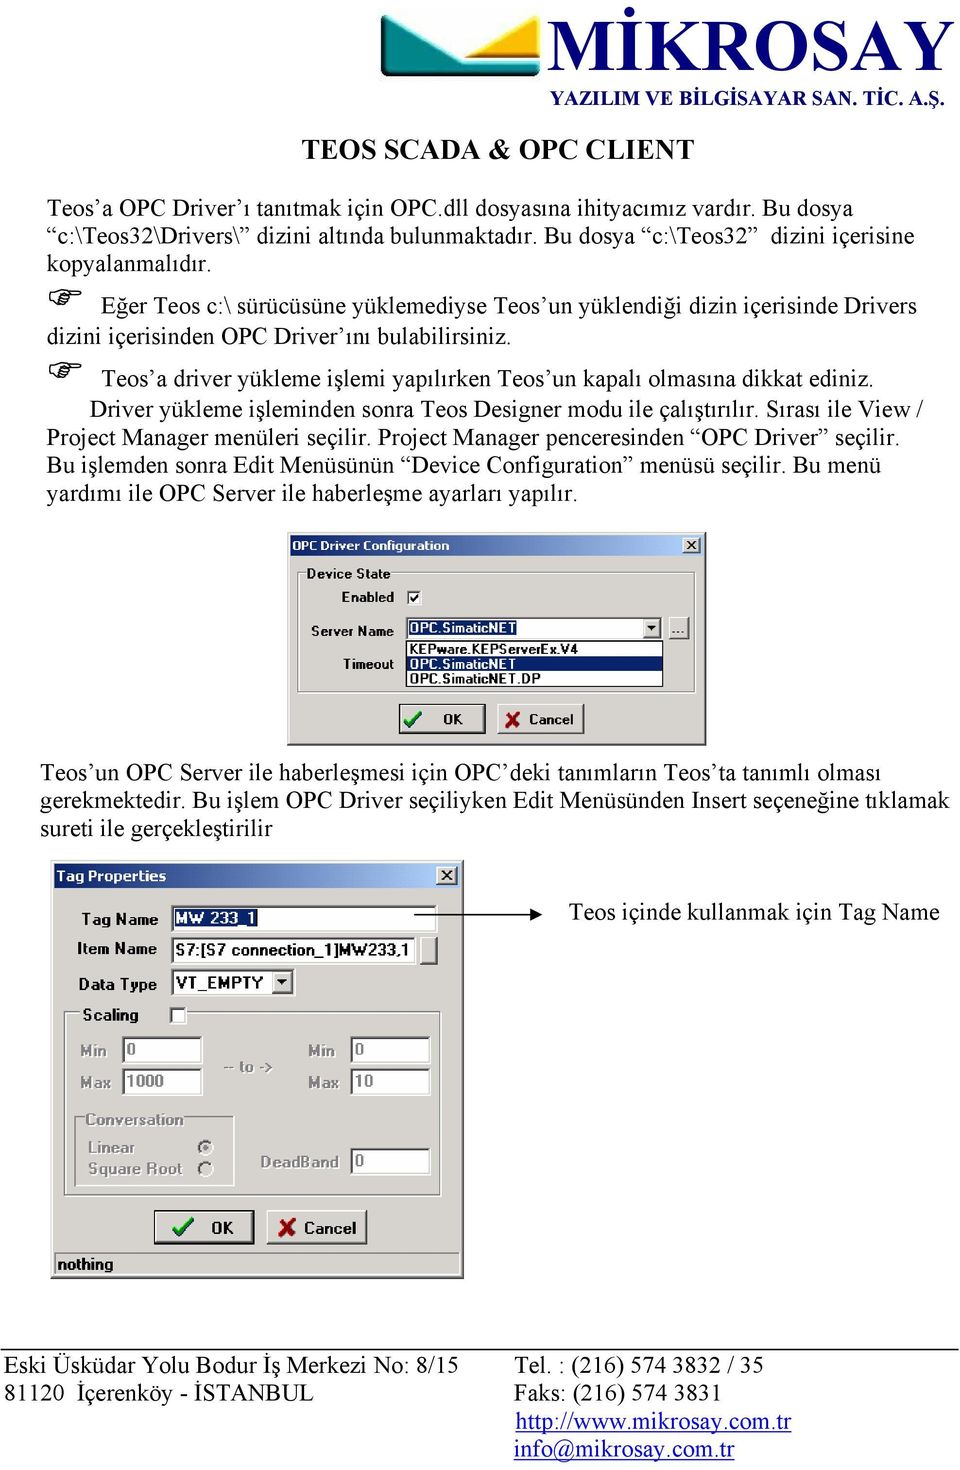 Teos a driver yükleme işlemi yapılırken Teos un kapalı olmasına dikkat ediniz. Driver yükleme işleminden sonra Teos Designer modu ile çalıştırılır. Sırası ile View / Project Manager menüleri seçilir.